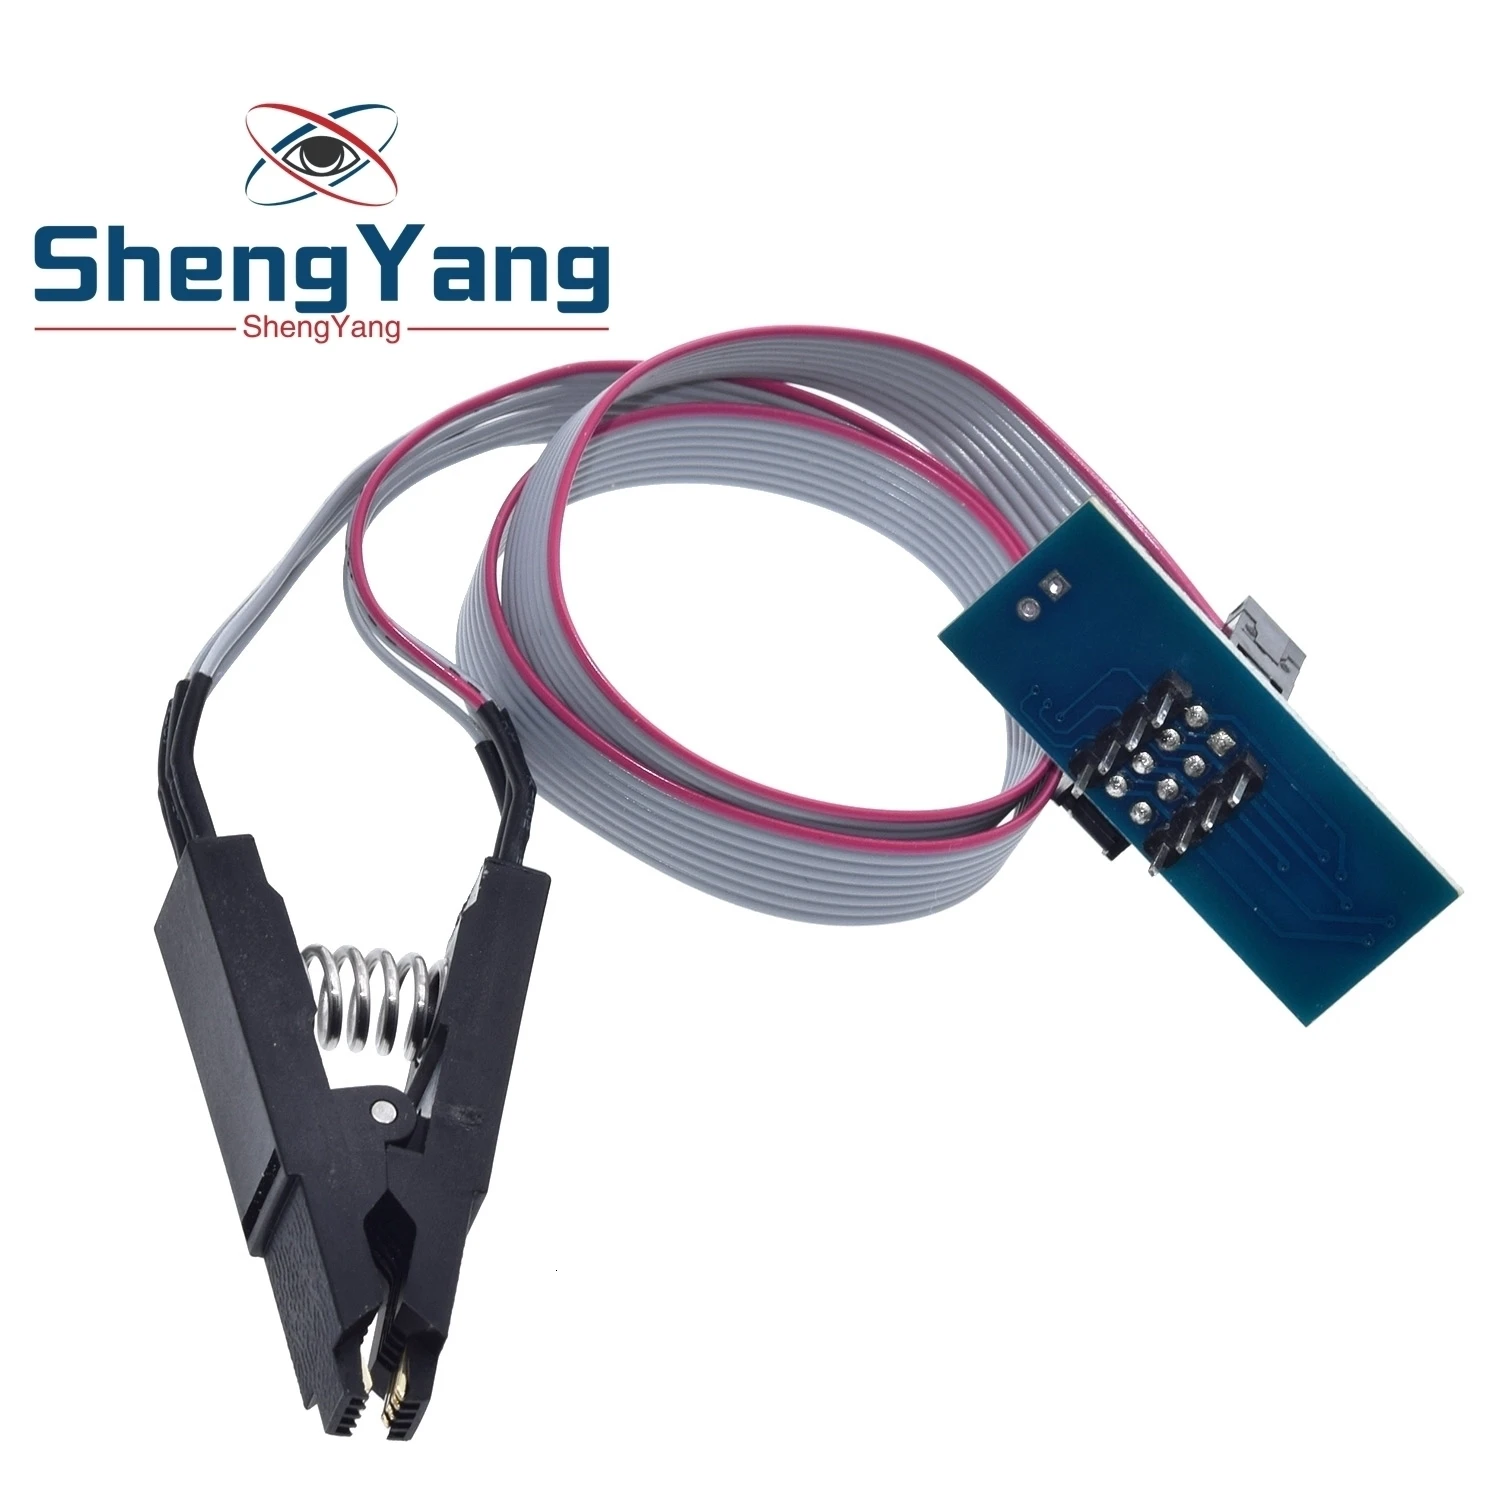 1 шт. ShengYang умная электроника CH340 CH340G CH341 CH341A 24 25 серия EEPROM Flash биос USB программатор с программным обеспечением и Драйвером